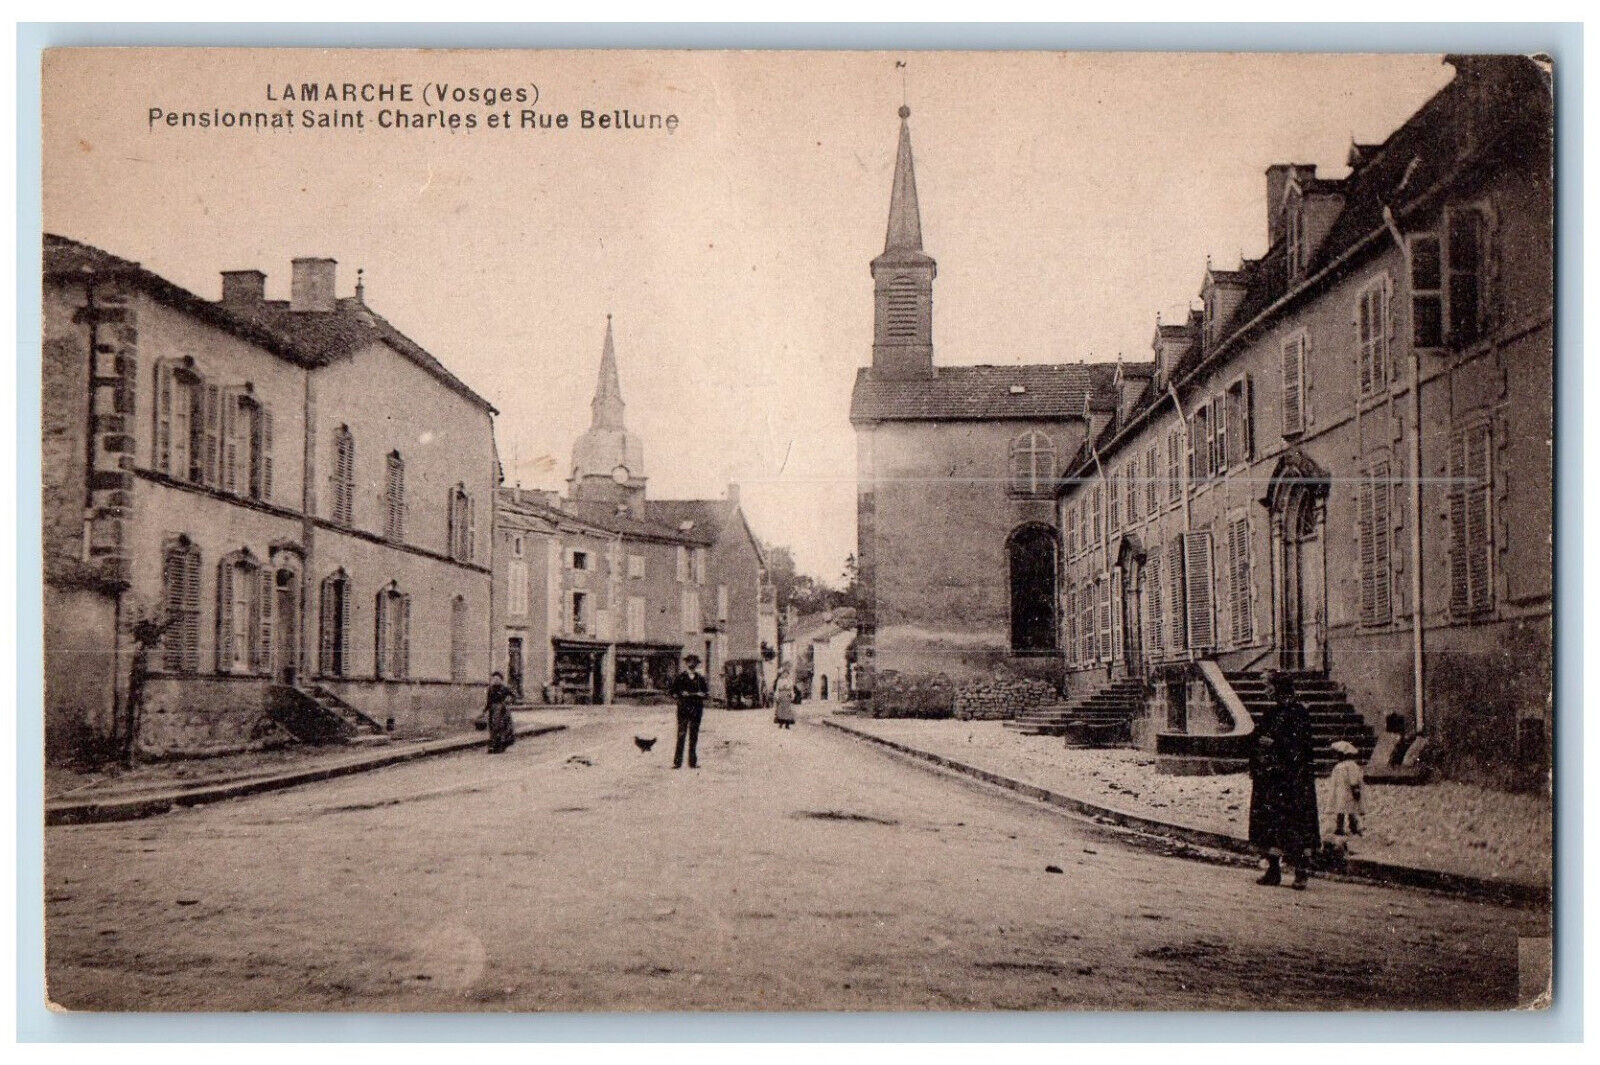 Lamarche Vosges France Postcard Pensionnat Saint Charles et Rue Bellune c1910